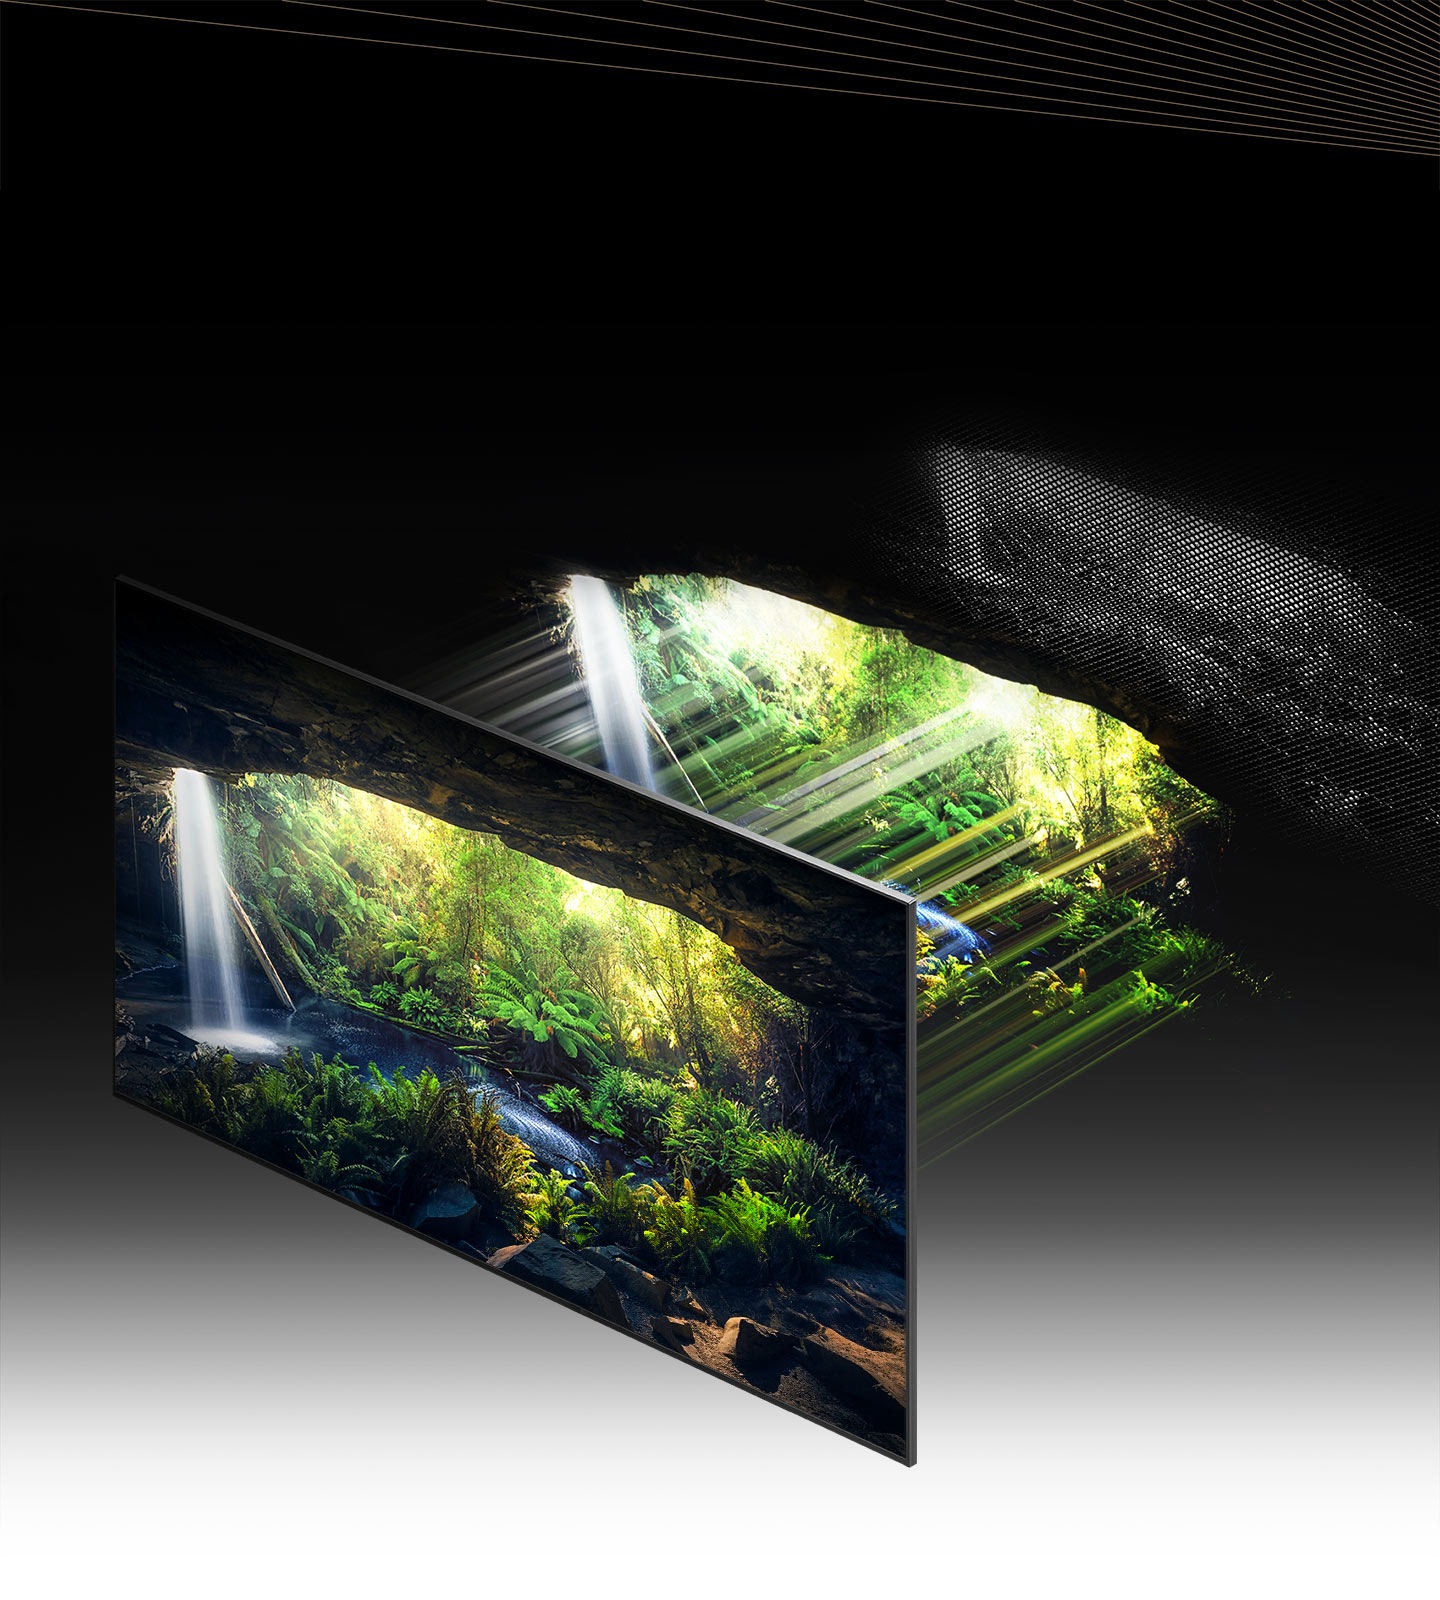 Thông qua Quantum Mini LED và microlayer, màn hình với phong cảnh rừng tuyệt đẹp nhìn từ bên trong hang động được hiển thị chi tiết, rõ ràng ở các vùng sáng và tối.